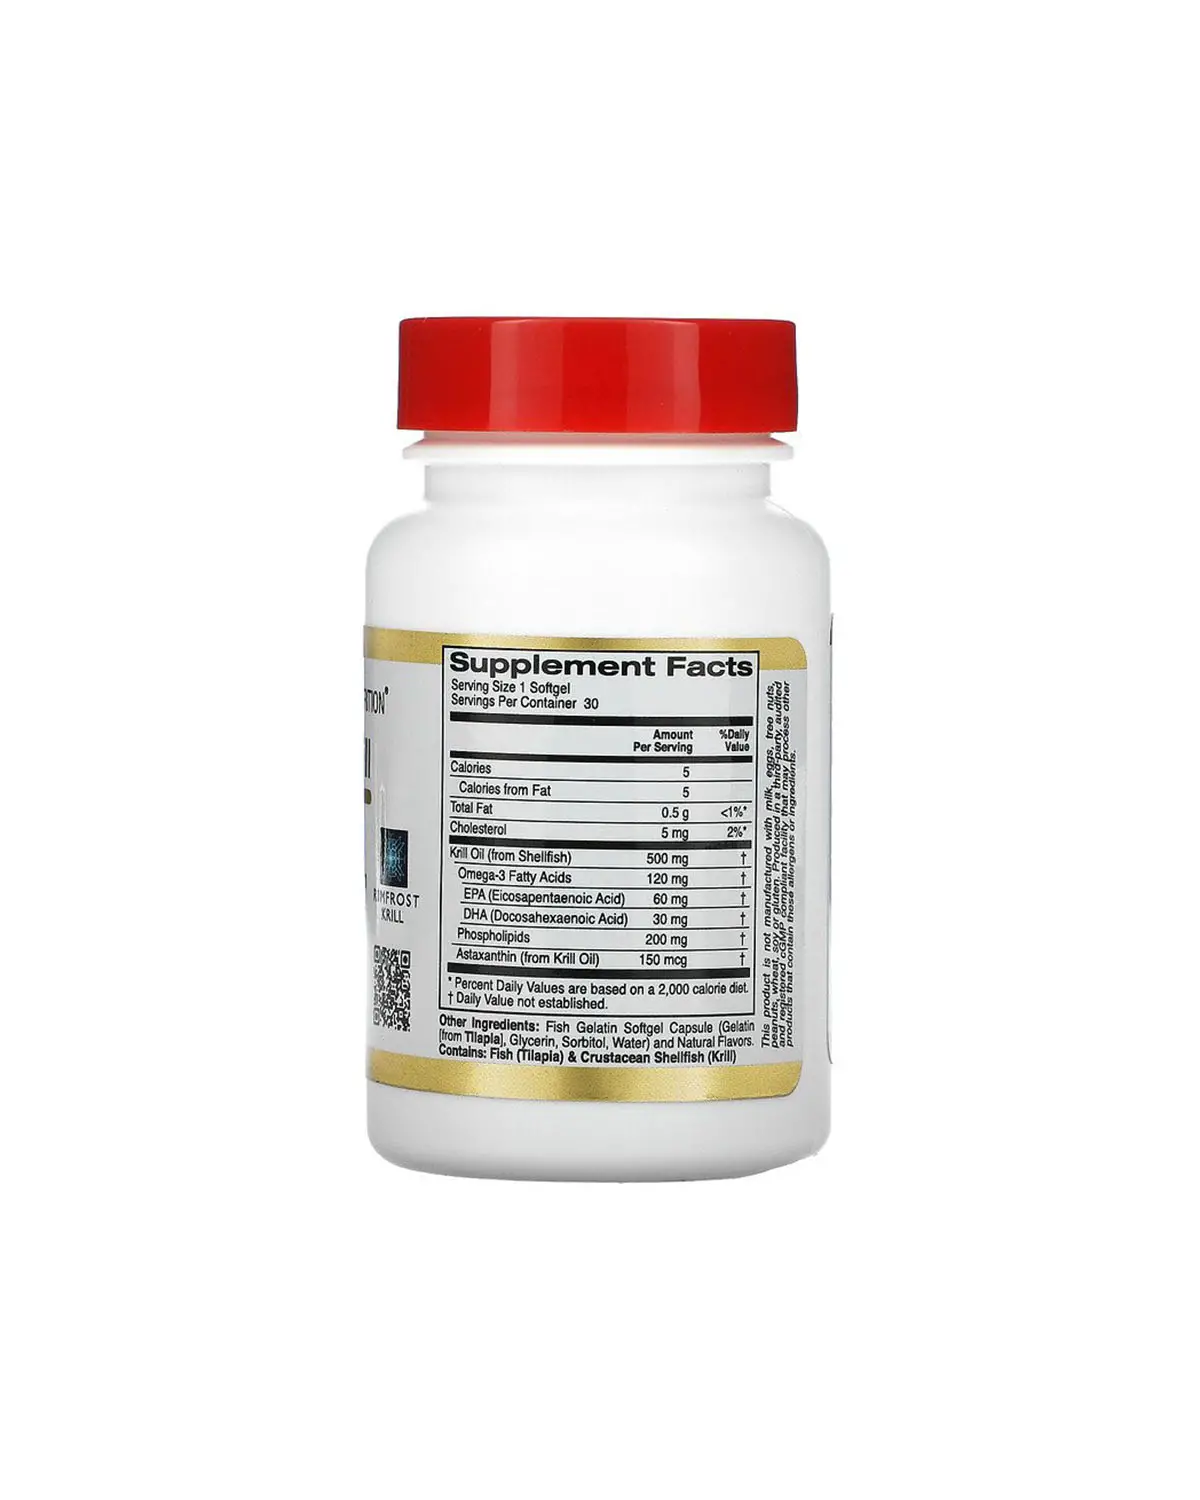 Масло криля с астаксантином 500 мг | 30 кап California Gold Nutrition